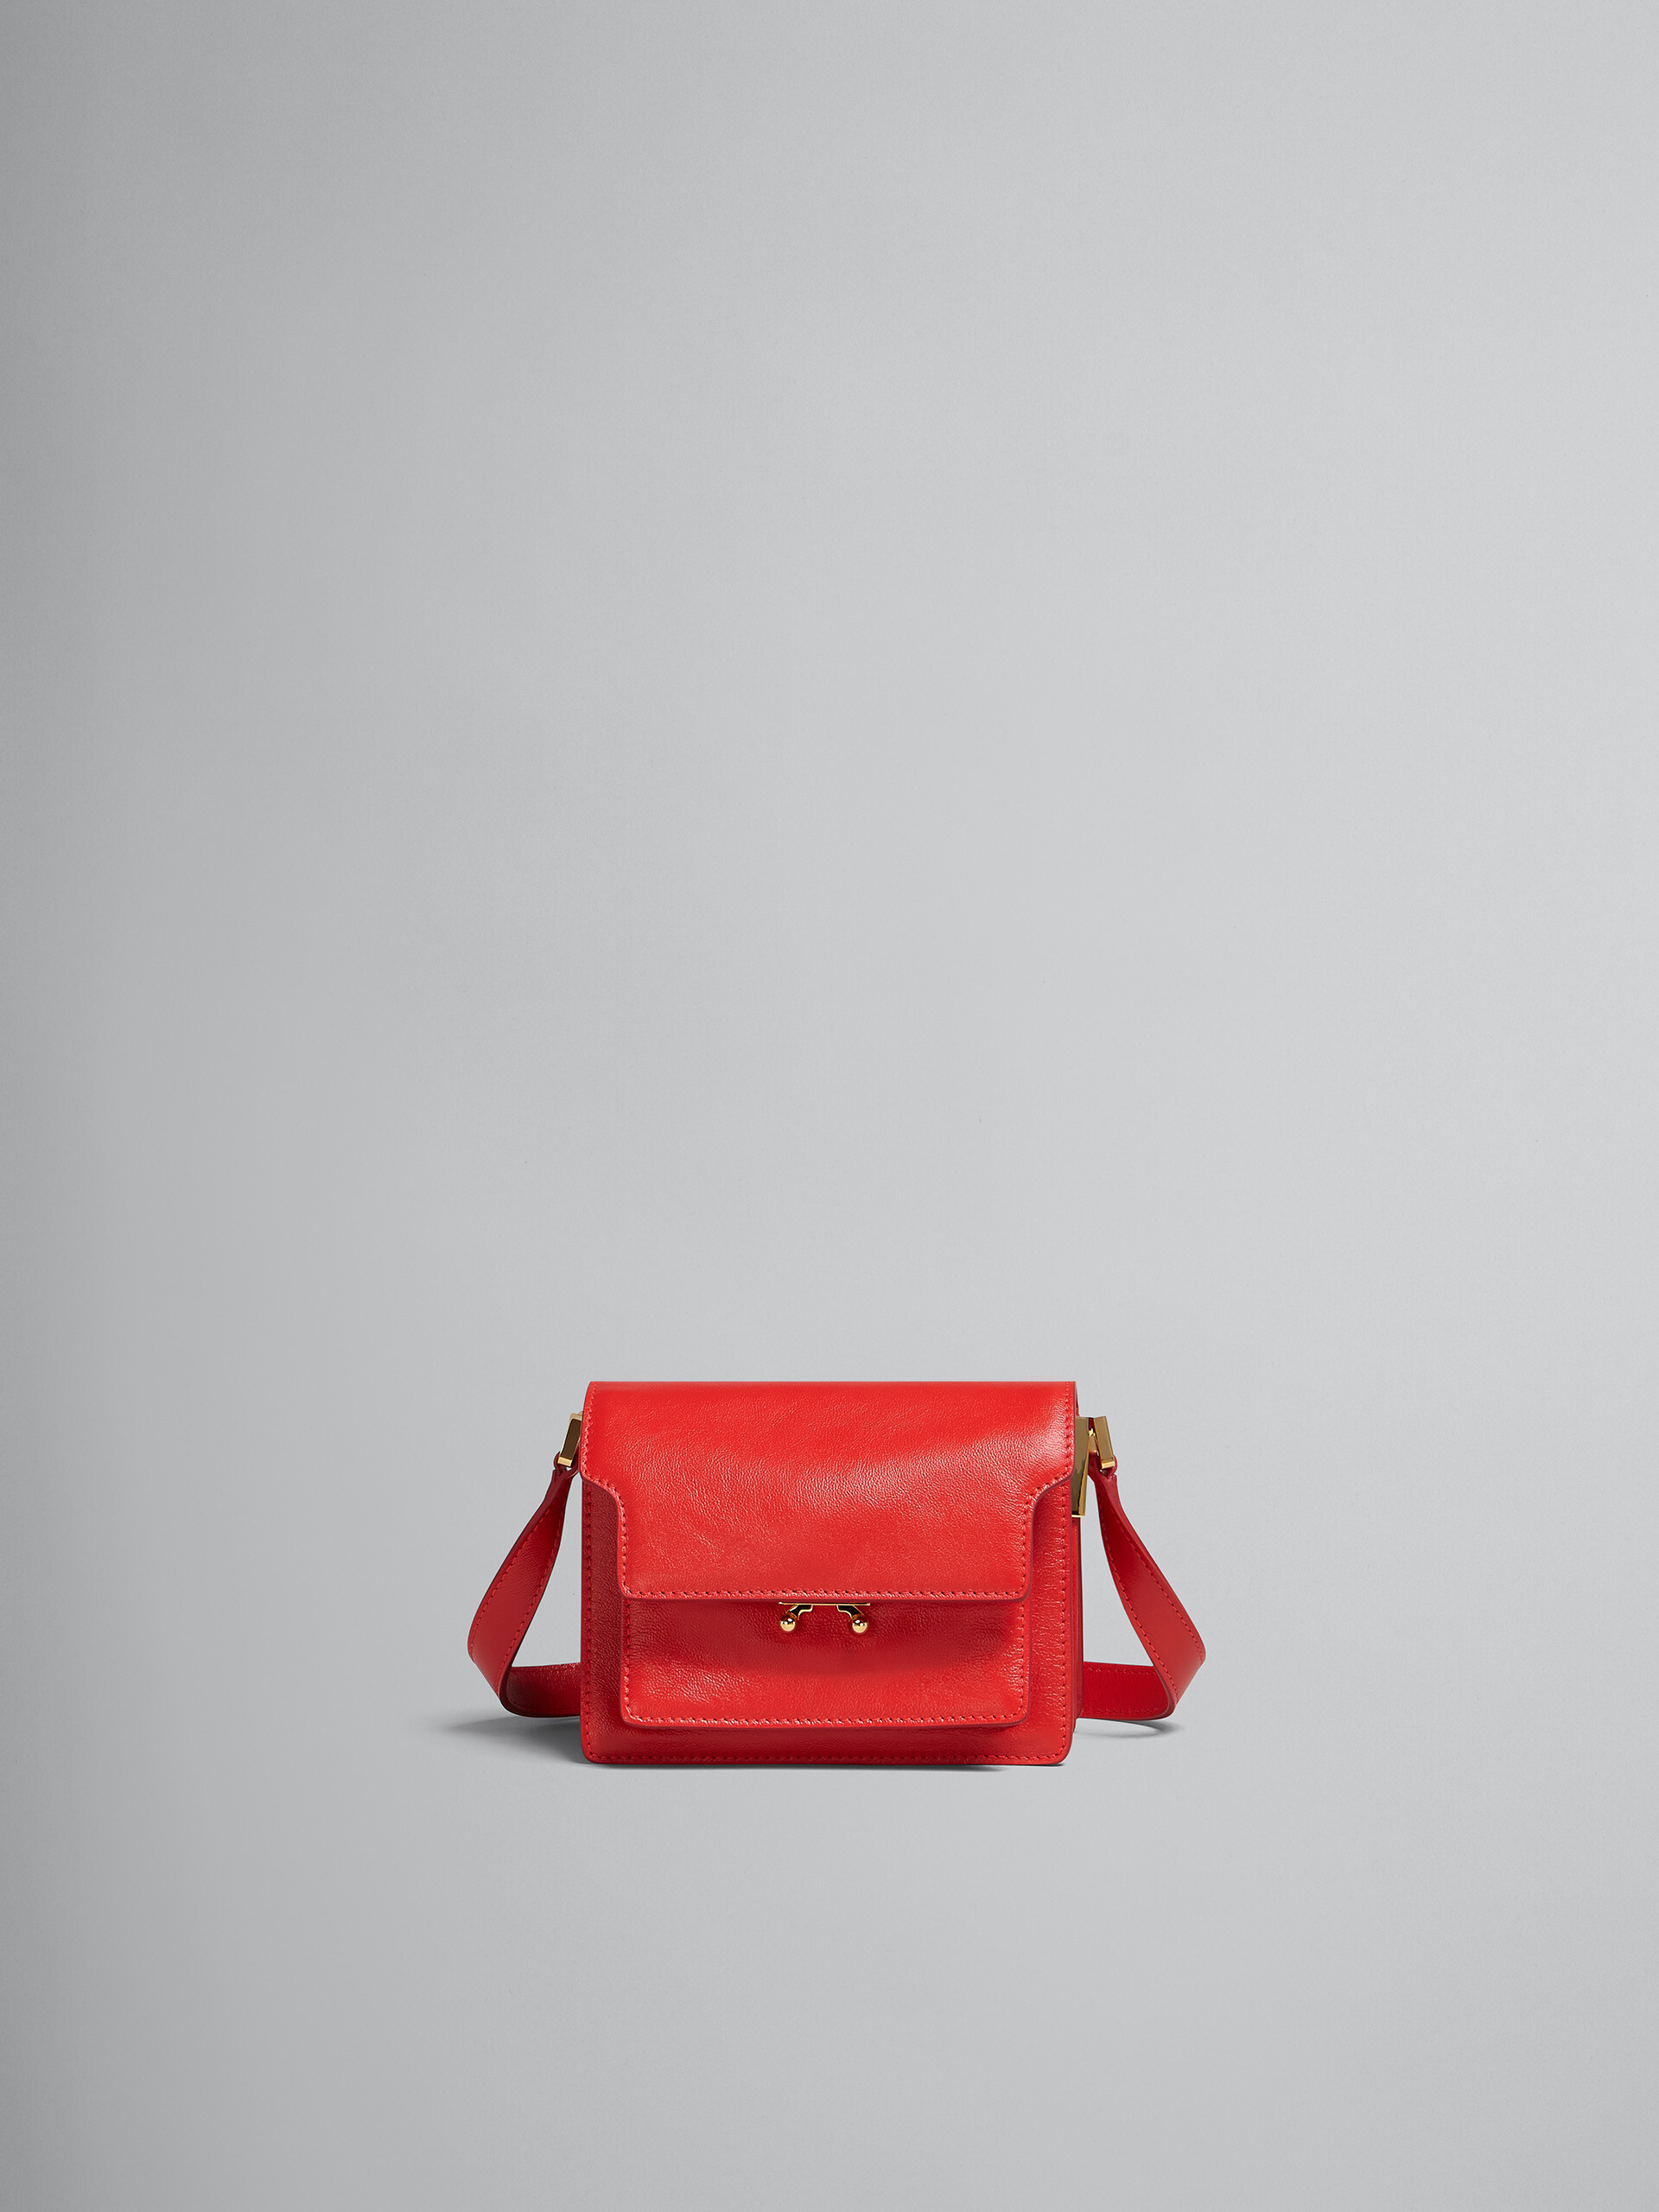 TRUNK SOFT mini bag in red leather - Shoulder Bag - Image 1